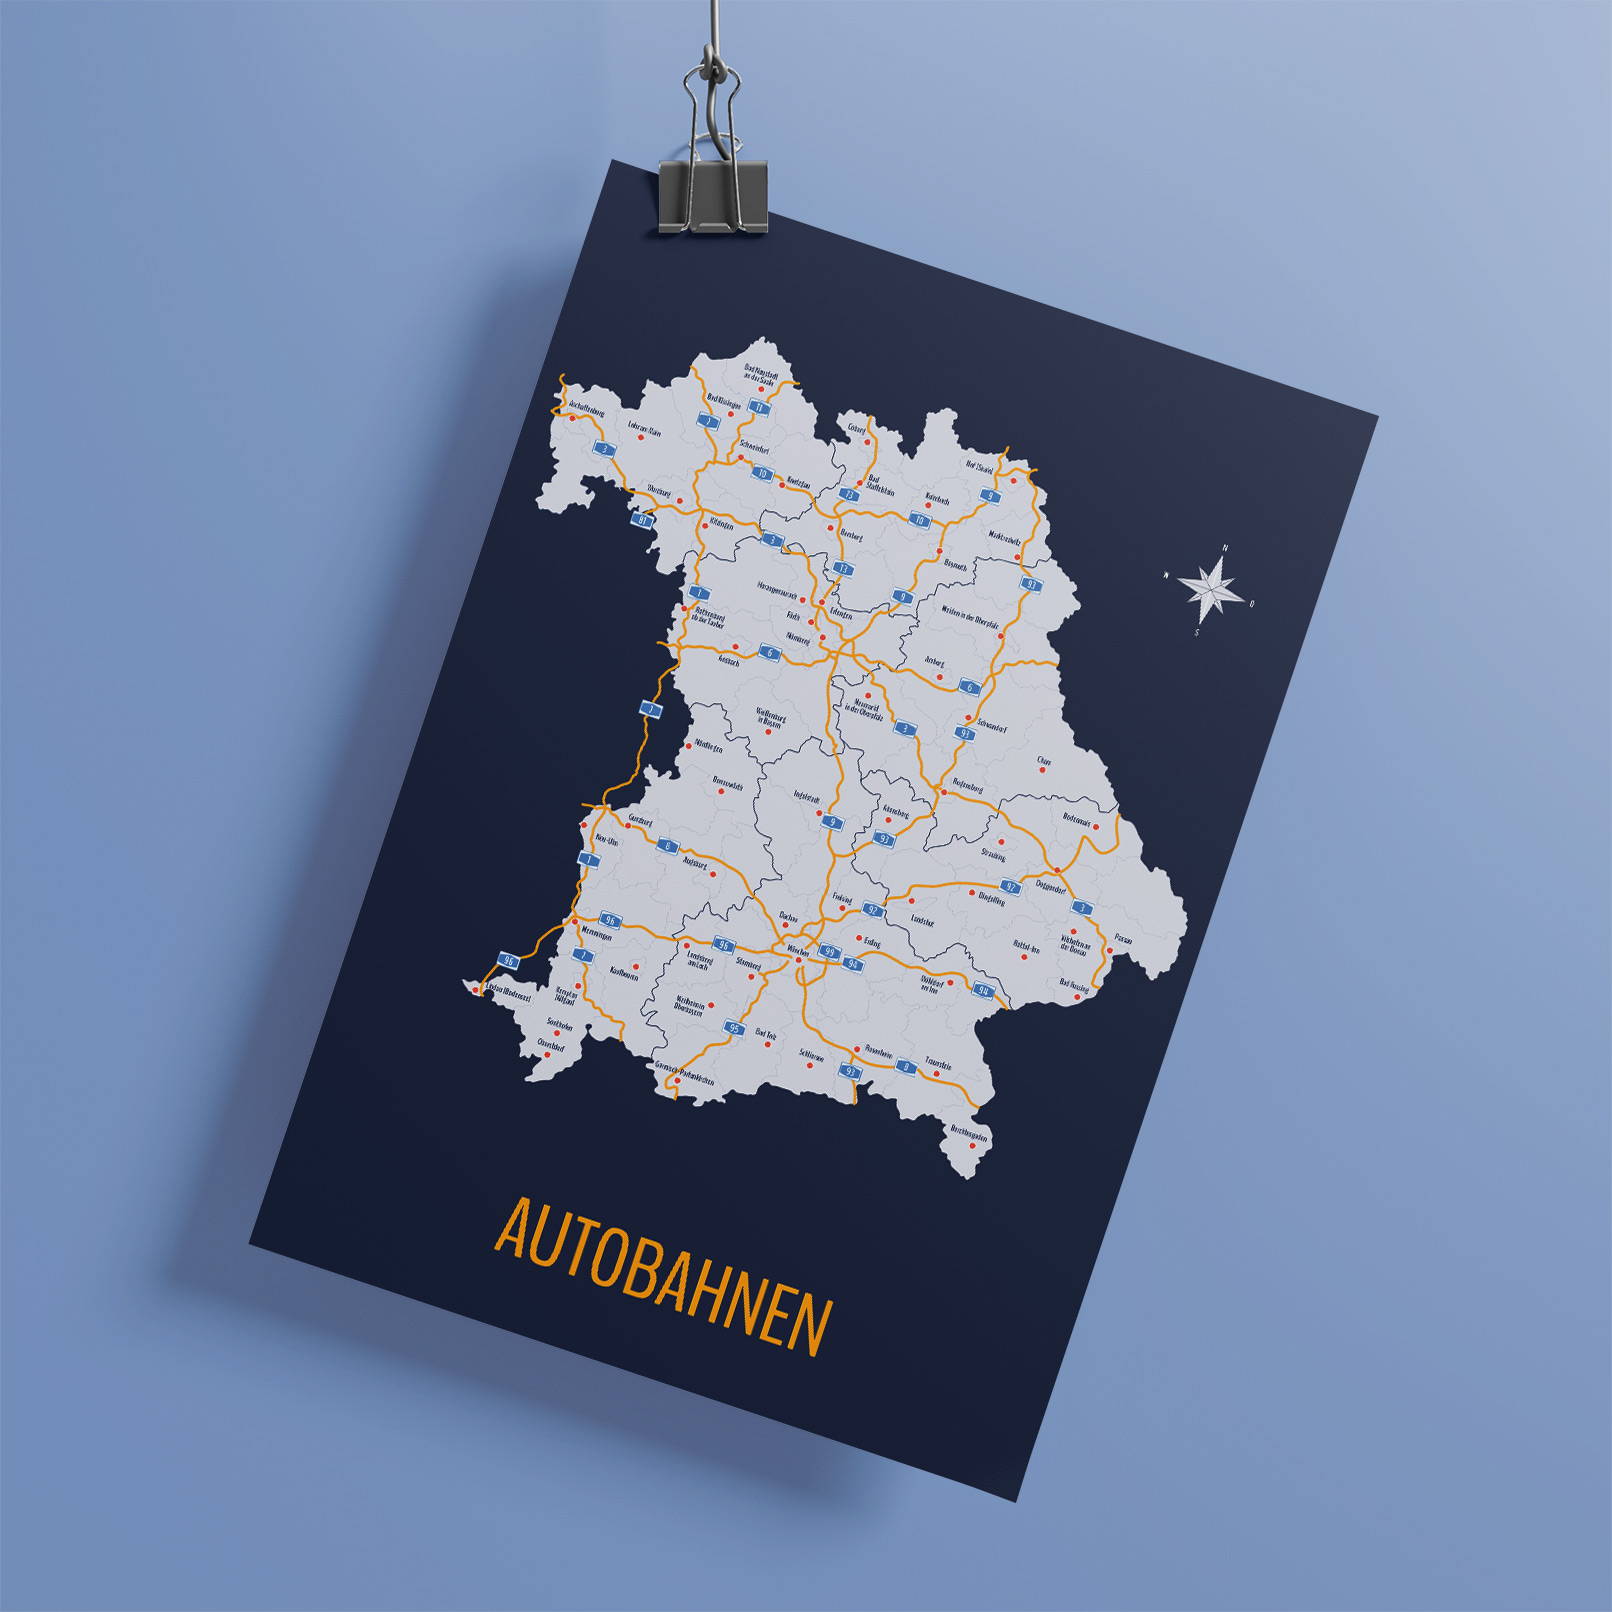 Landkarte von Bayern mit allen Landkreisen und kreisfreien Städten